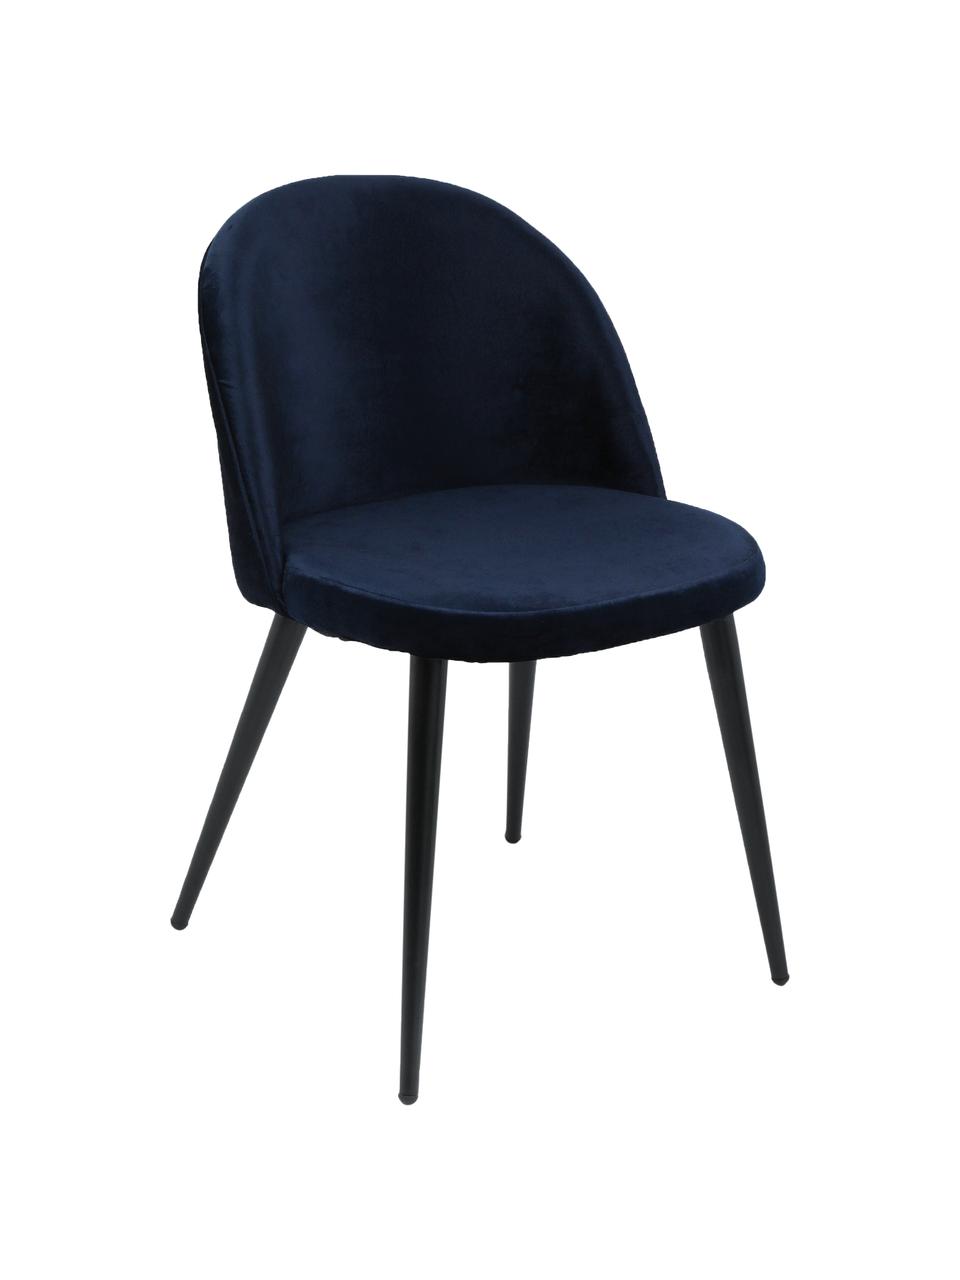 Fluweel gestoffeerde stoelen Amy, 2 stuks, Bekleding: fluweel (100% polyester), Poten: gepoedercoat metaal, Bekleding: marineblauw. Poten: zwart, B 47 x D 55 cm